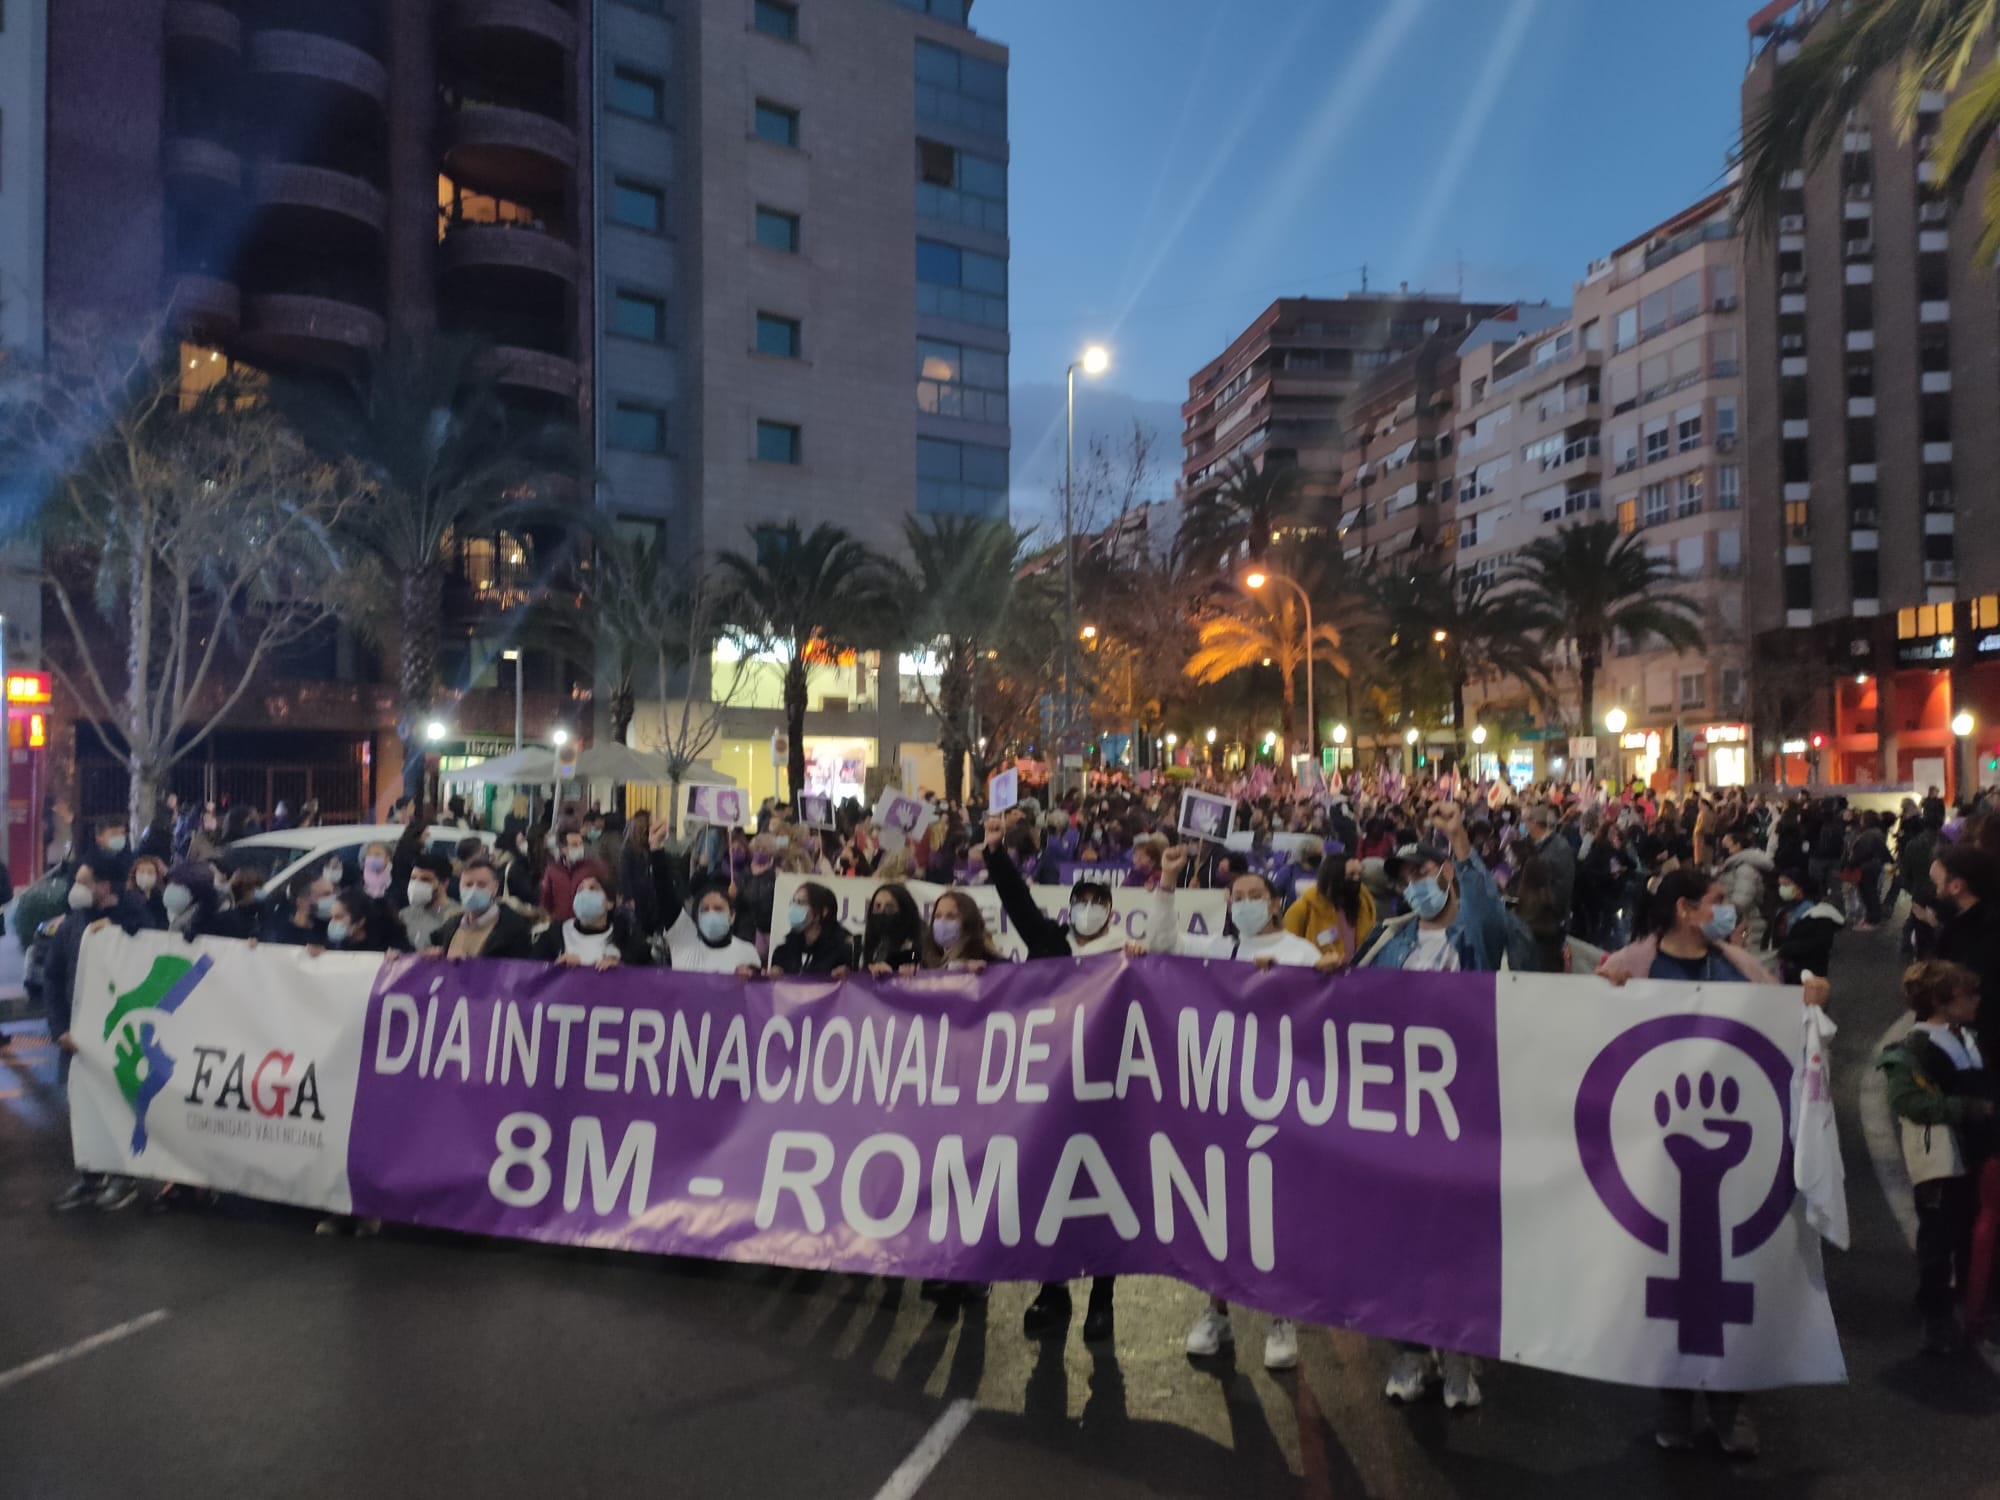 8M Romaní: acto conmemorativo por el Día Internacional de la Mujer